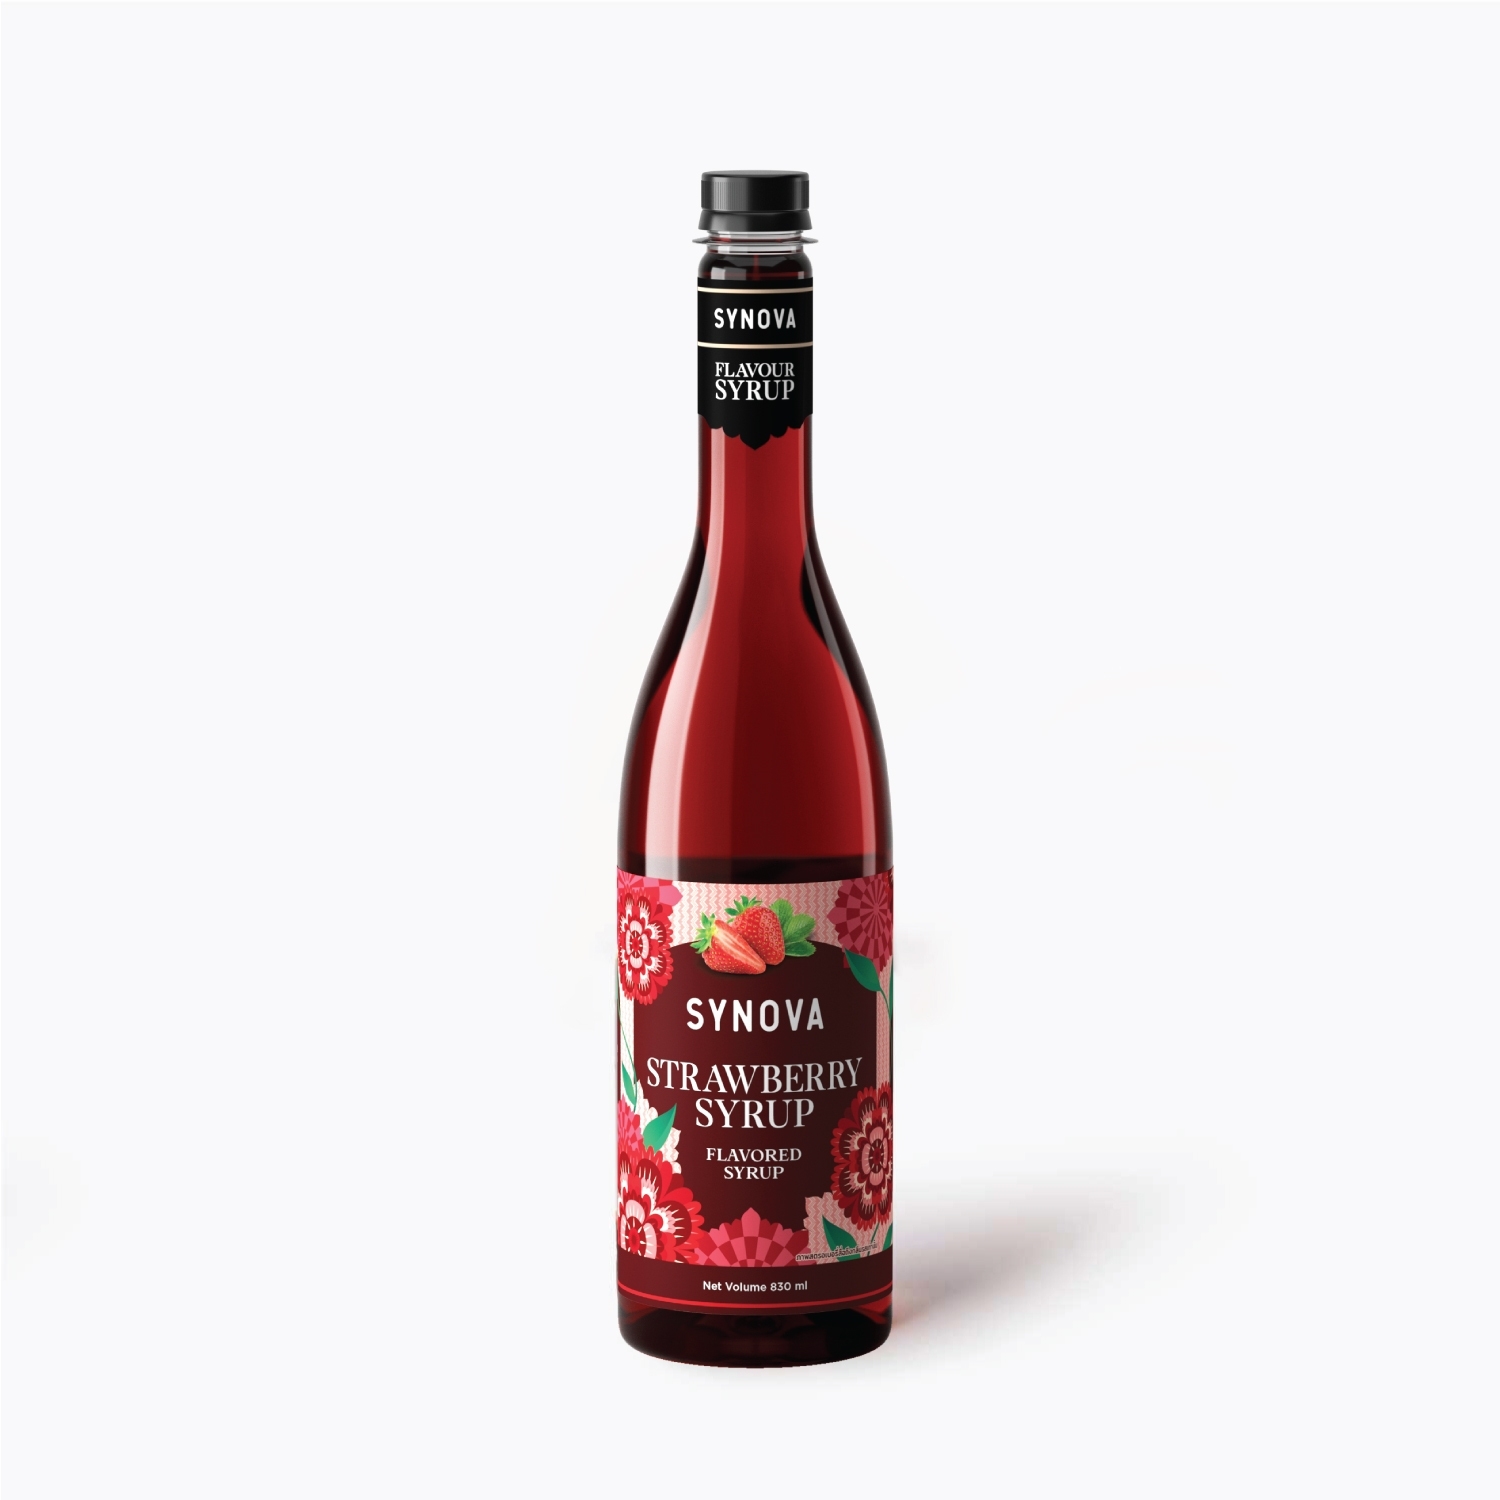 SYNOVA Strawberry Syrup (Box)